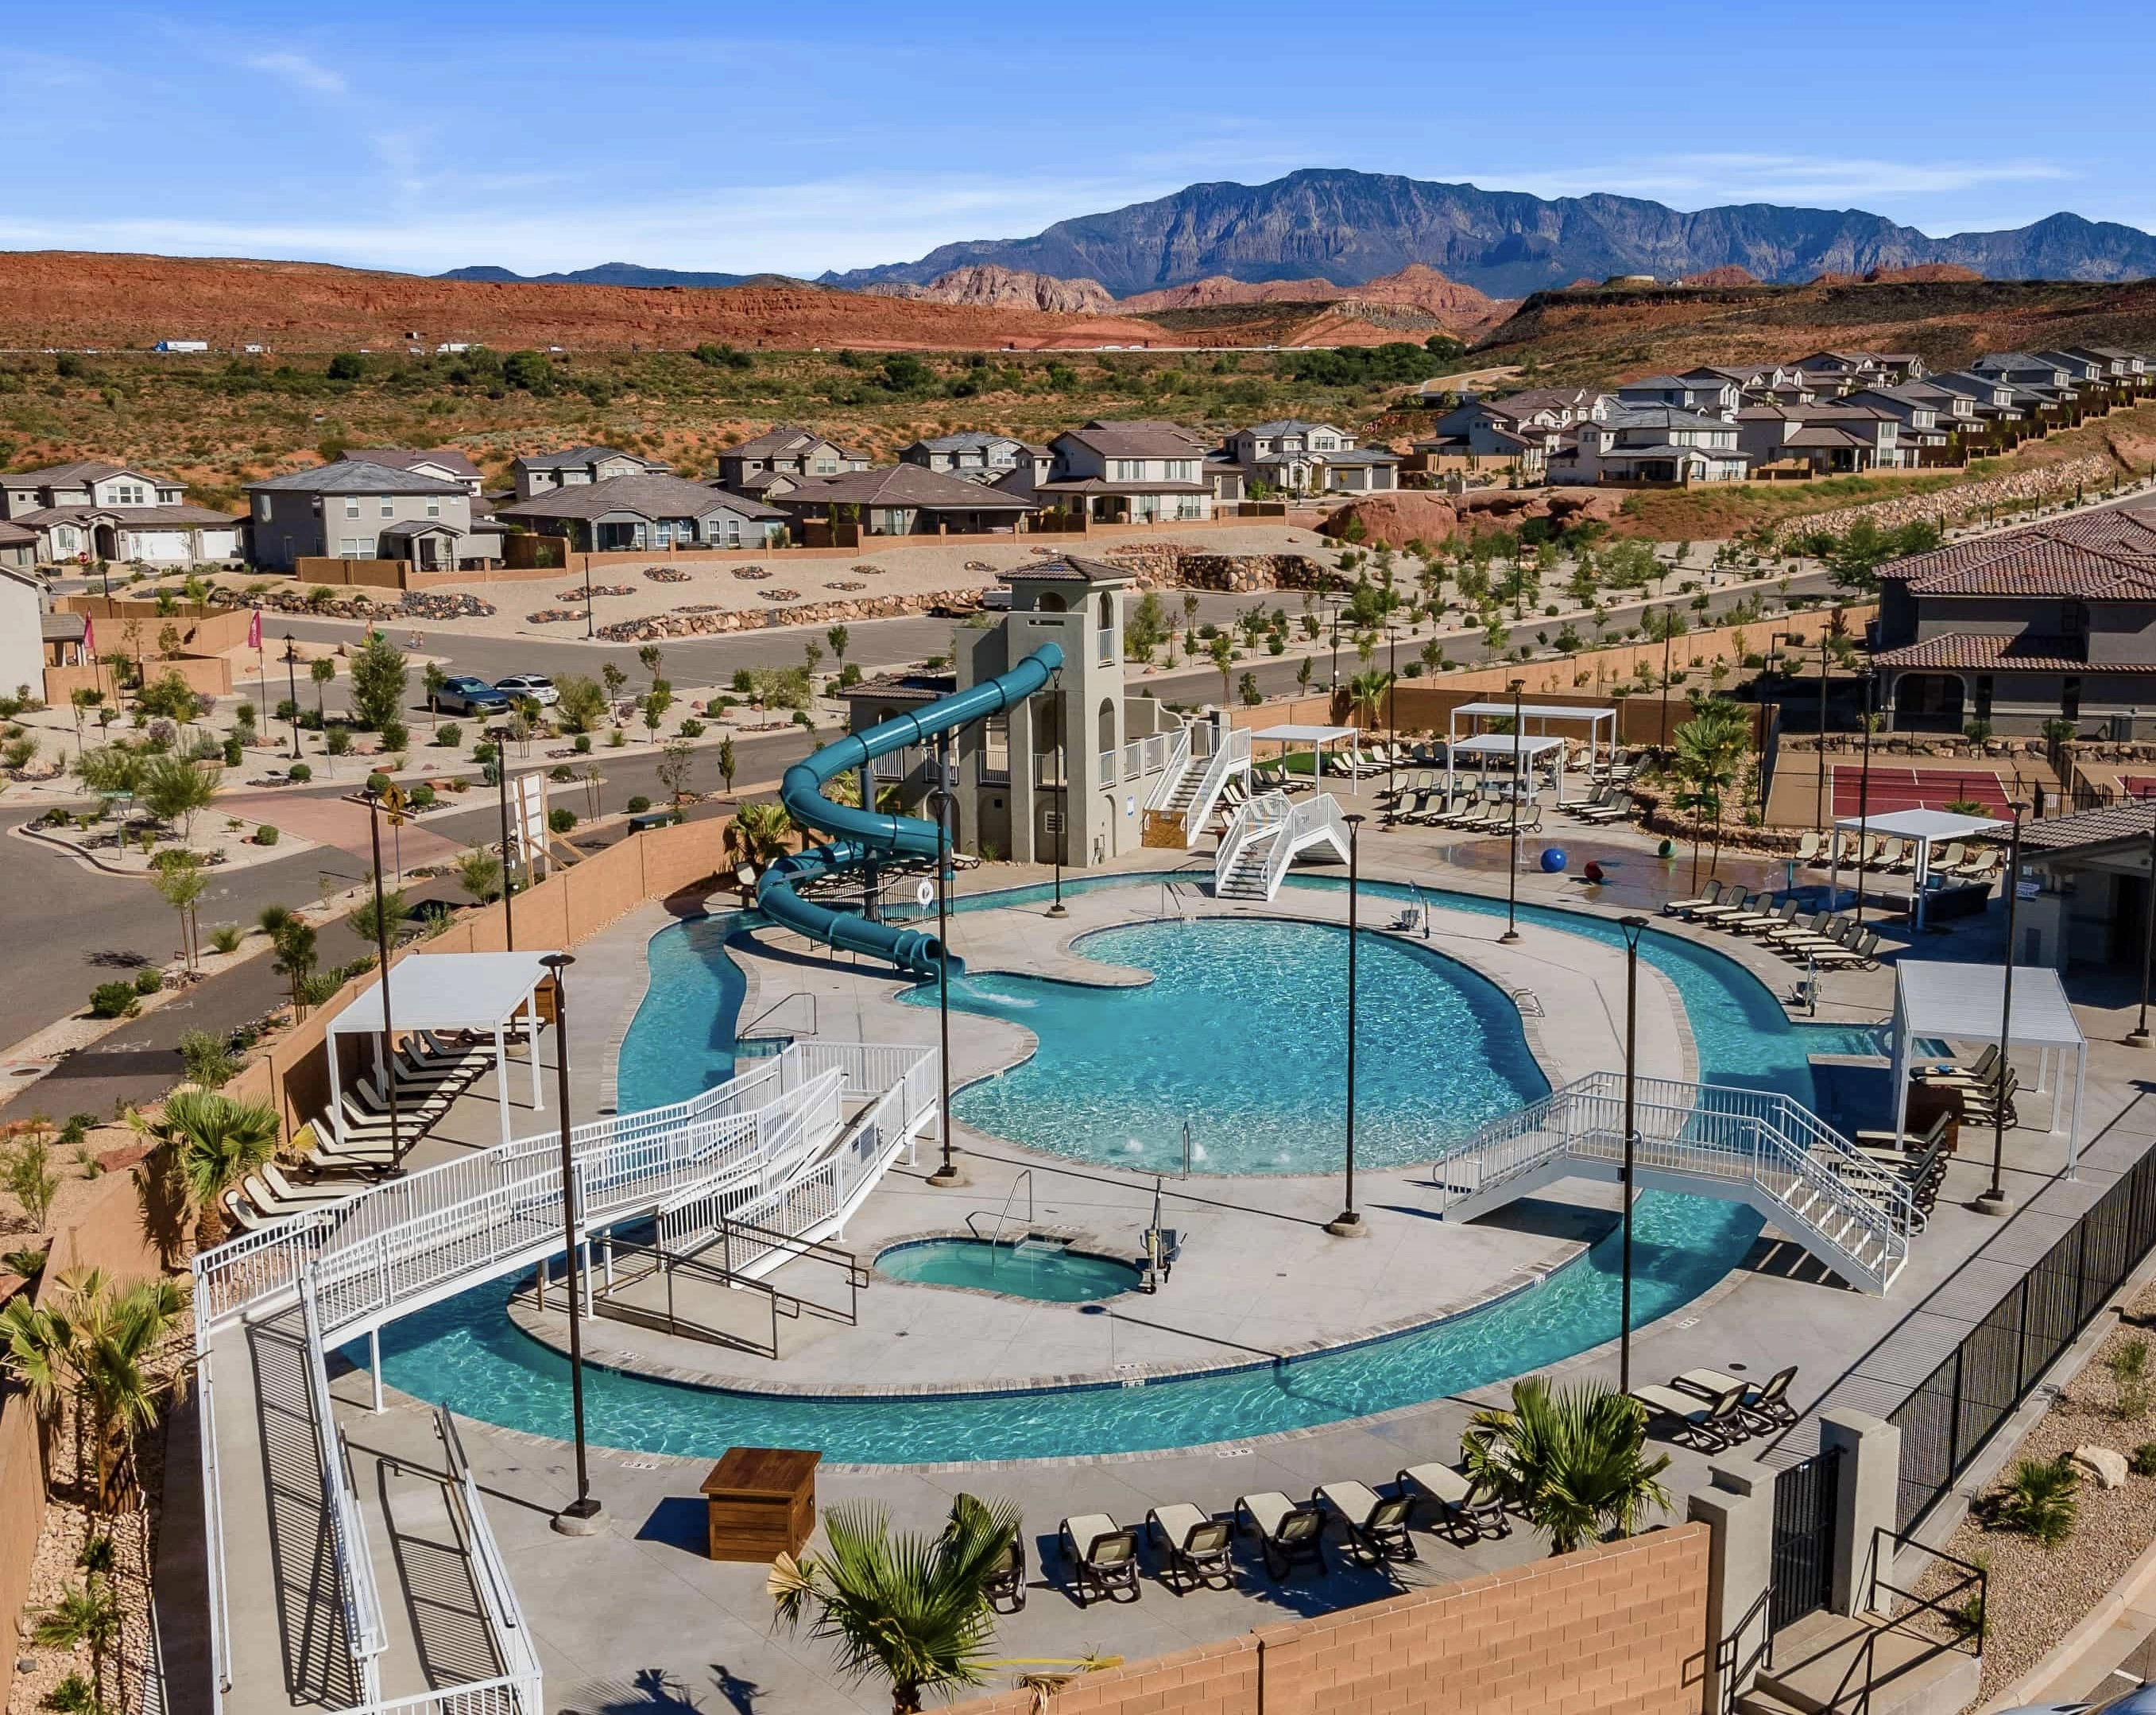 Resort pool with waterslide